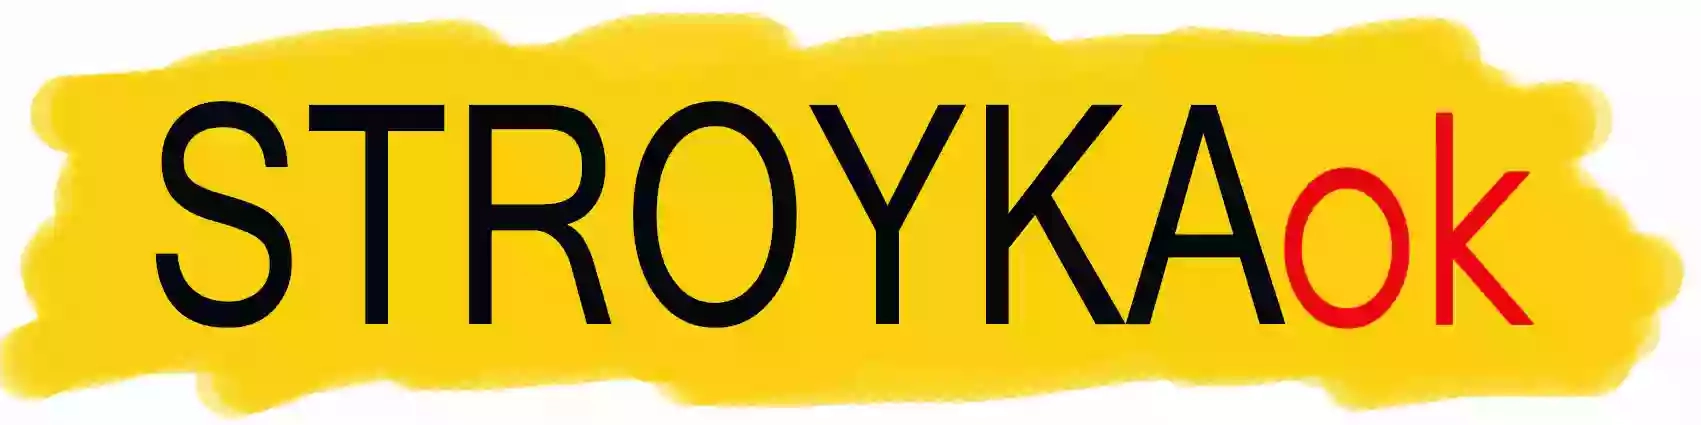 StroykaOK